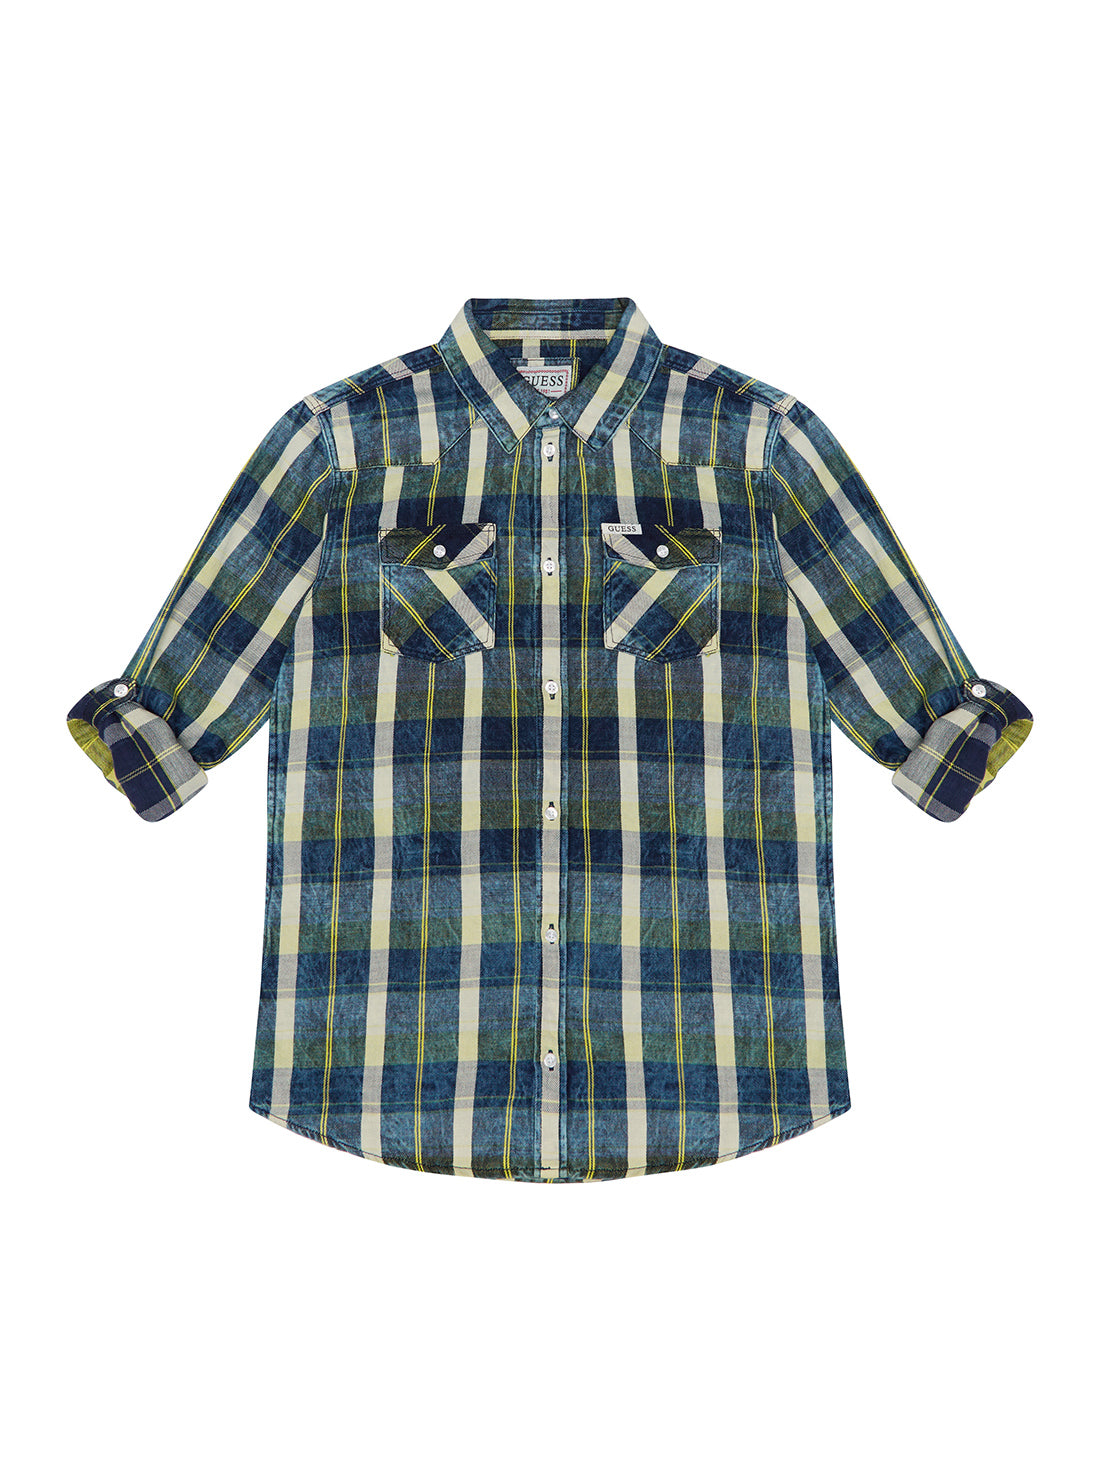 GUESS Big Boy Blue Multi Check Long Sleeve Mini Me Shirt (7-16) L1BH11D4F21 Front View